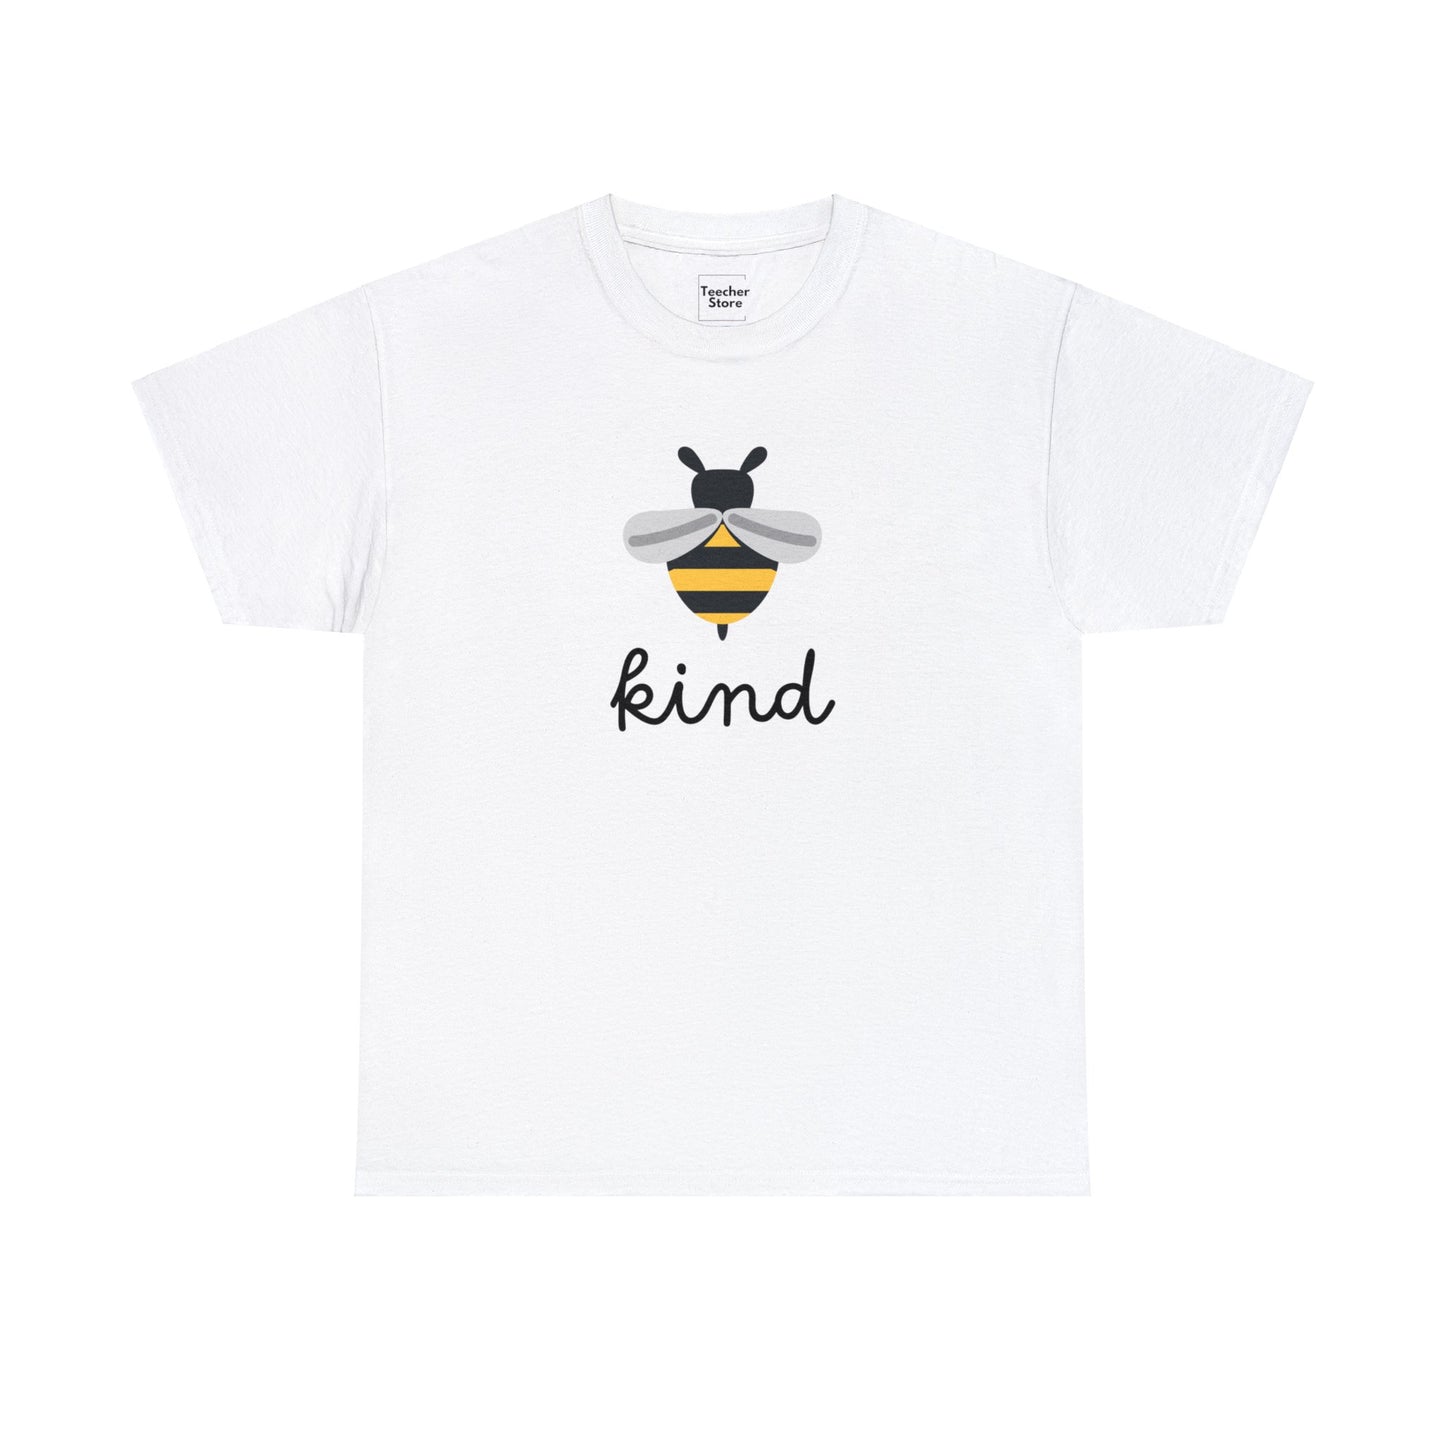 Bee Kind Tee-Shirt